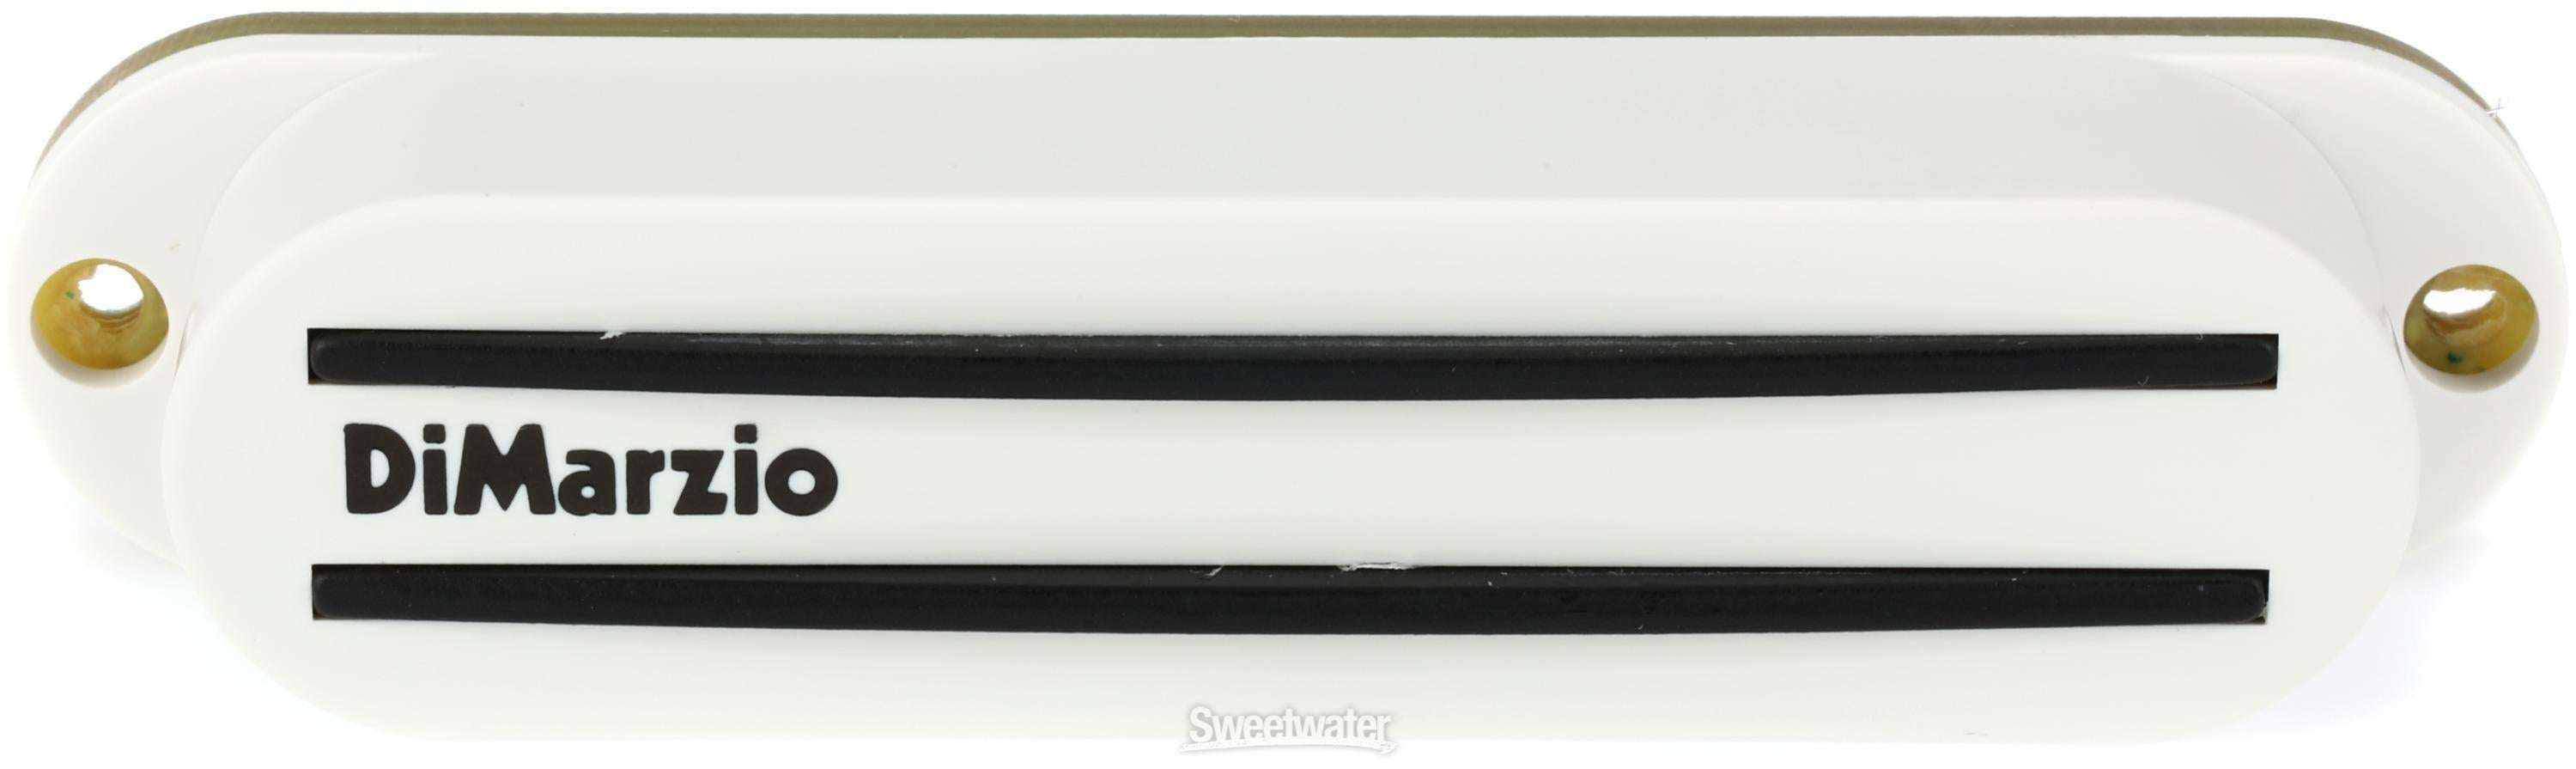 DiMarzio The Cruiser Bridge Single Coil Pickup - White | Sweetwater